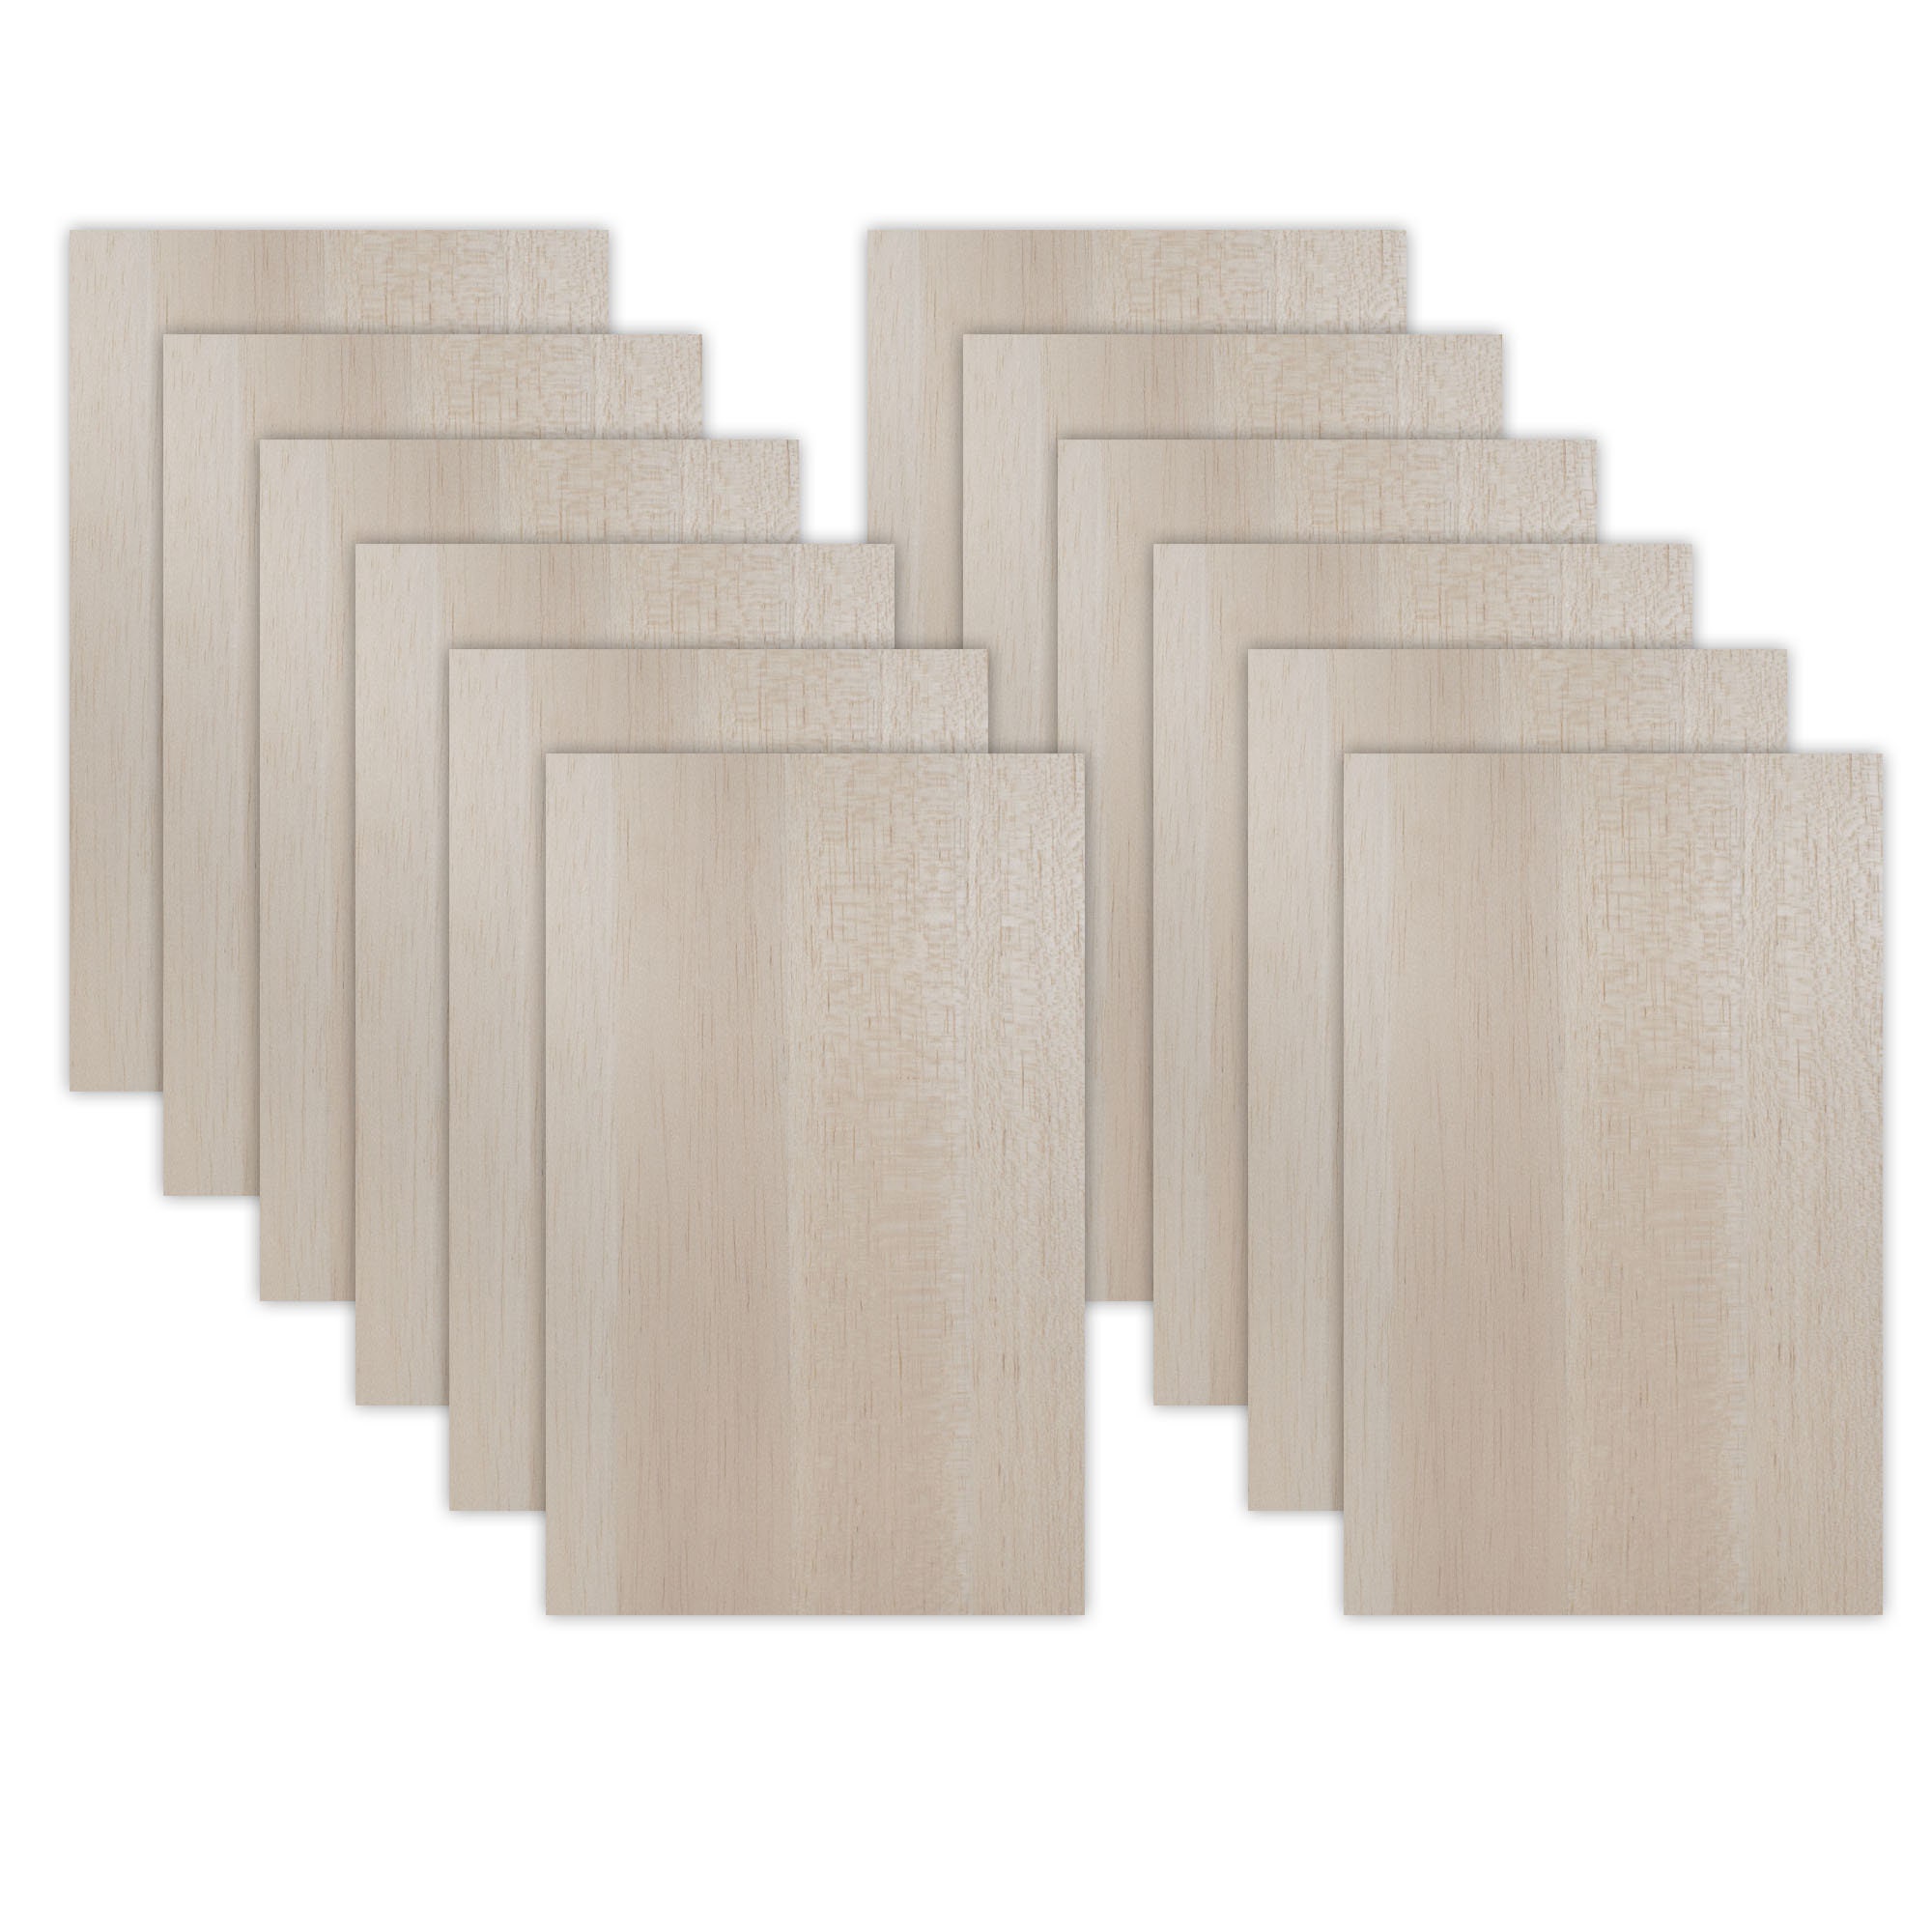 5/16 x 5/16 x 48 Balsa Wood Sheet – National Balsa